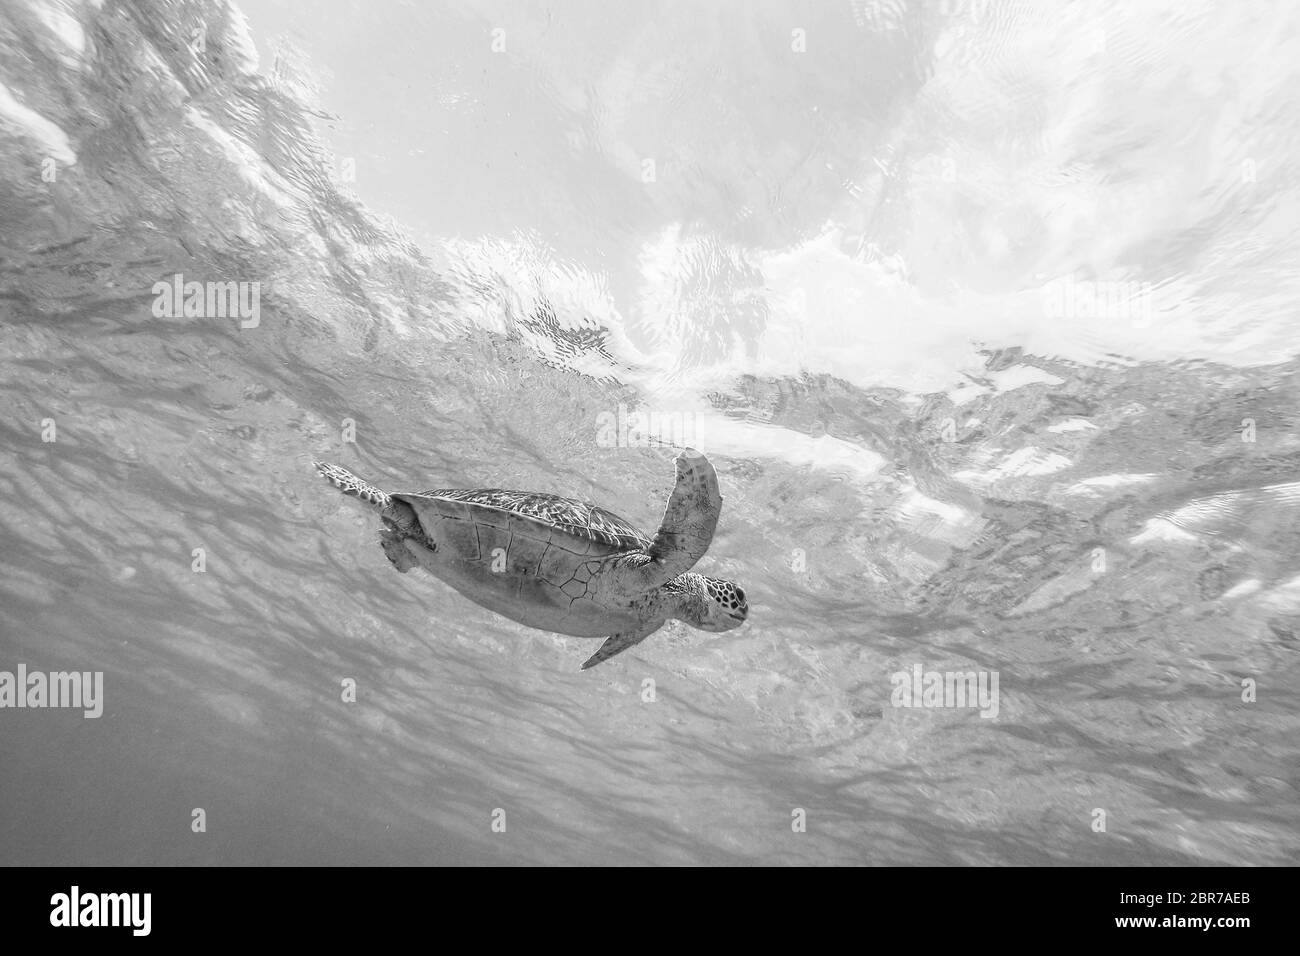 Tortue de mer piscine librement dans l'océan bleu. La tortue imbriquée, Eretmochelys imbricata est en voie de disparition. Image en noir et blanc. Banque D'Images